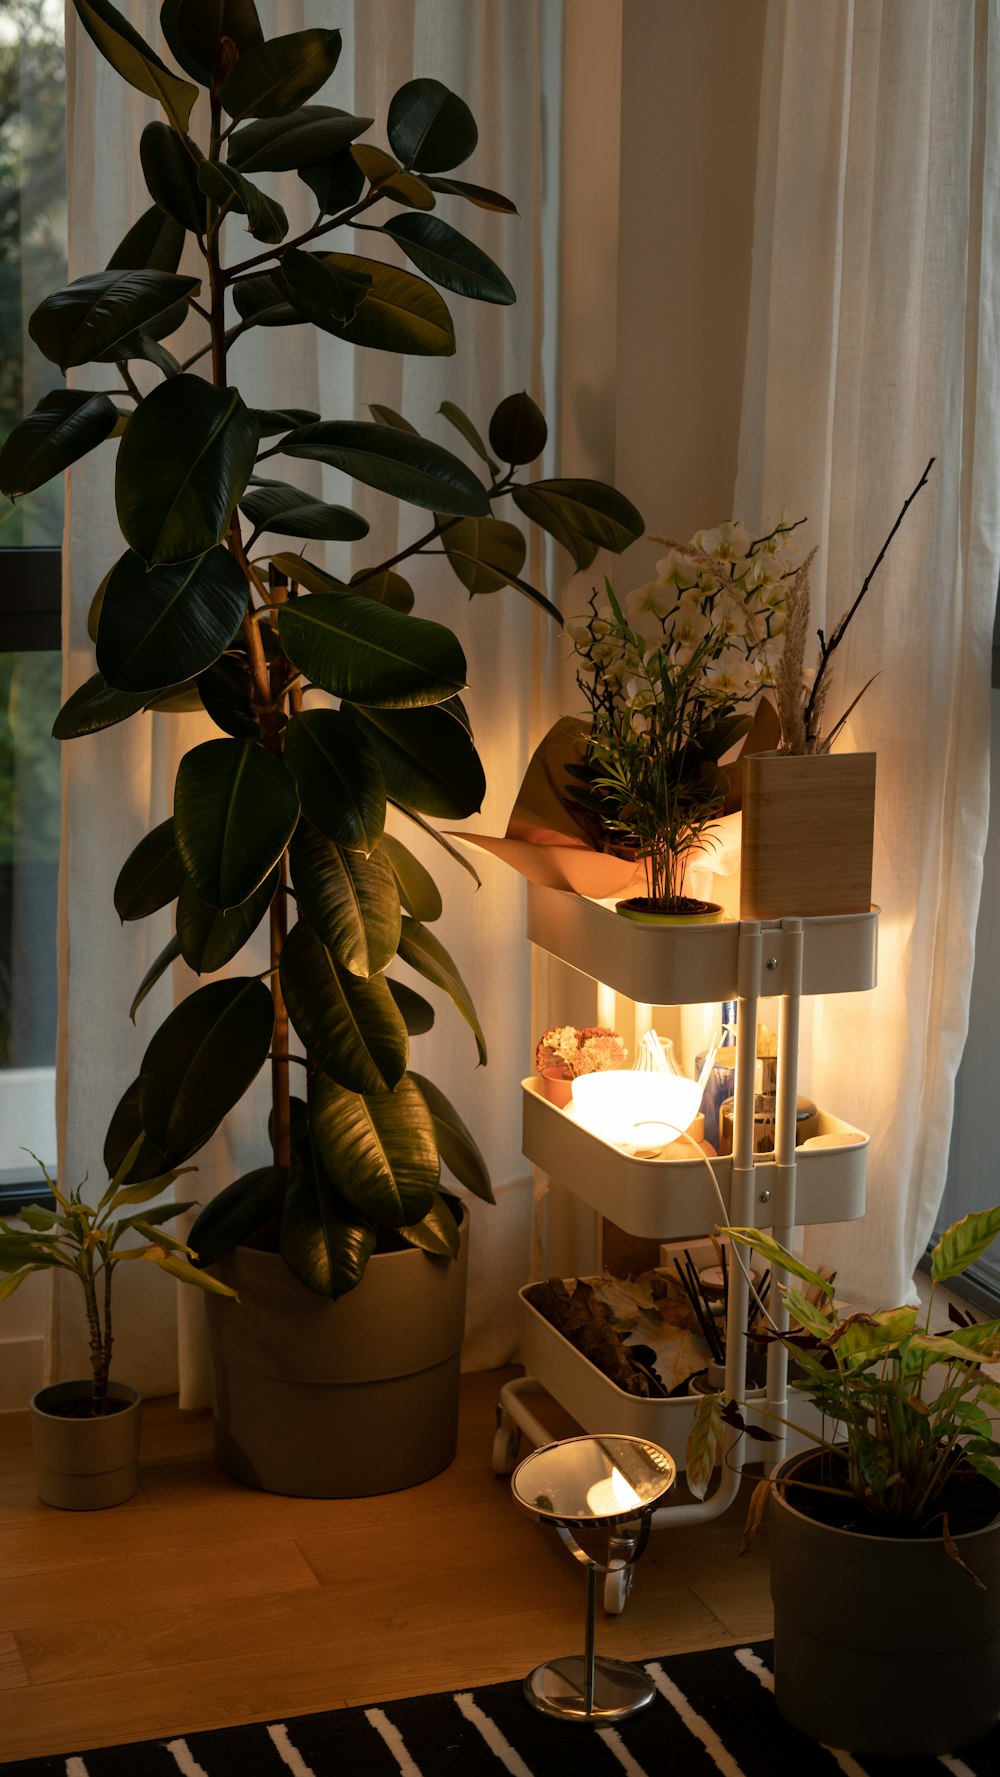 Una planta en una maceta en un estante junto a una ventana